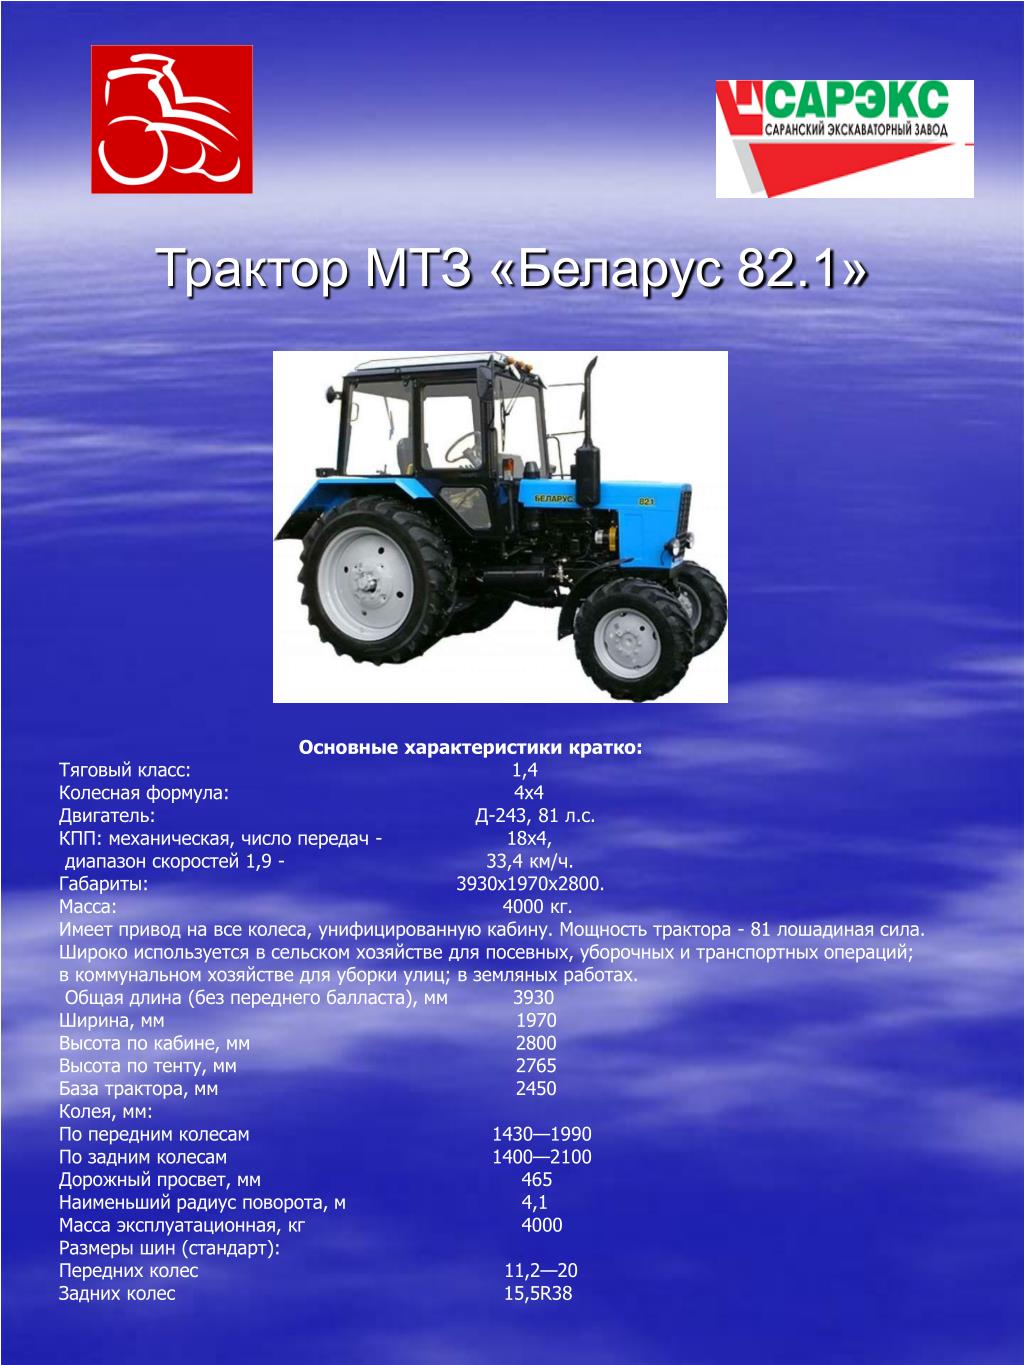 Трактор мтз-82: описание, расход топлива и технические характеристики, конструкция трактора, отзывы владельцев